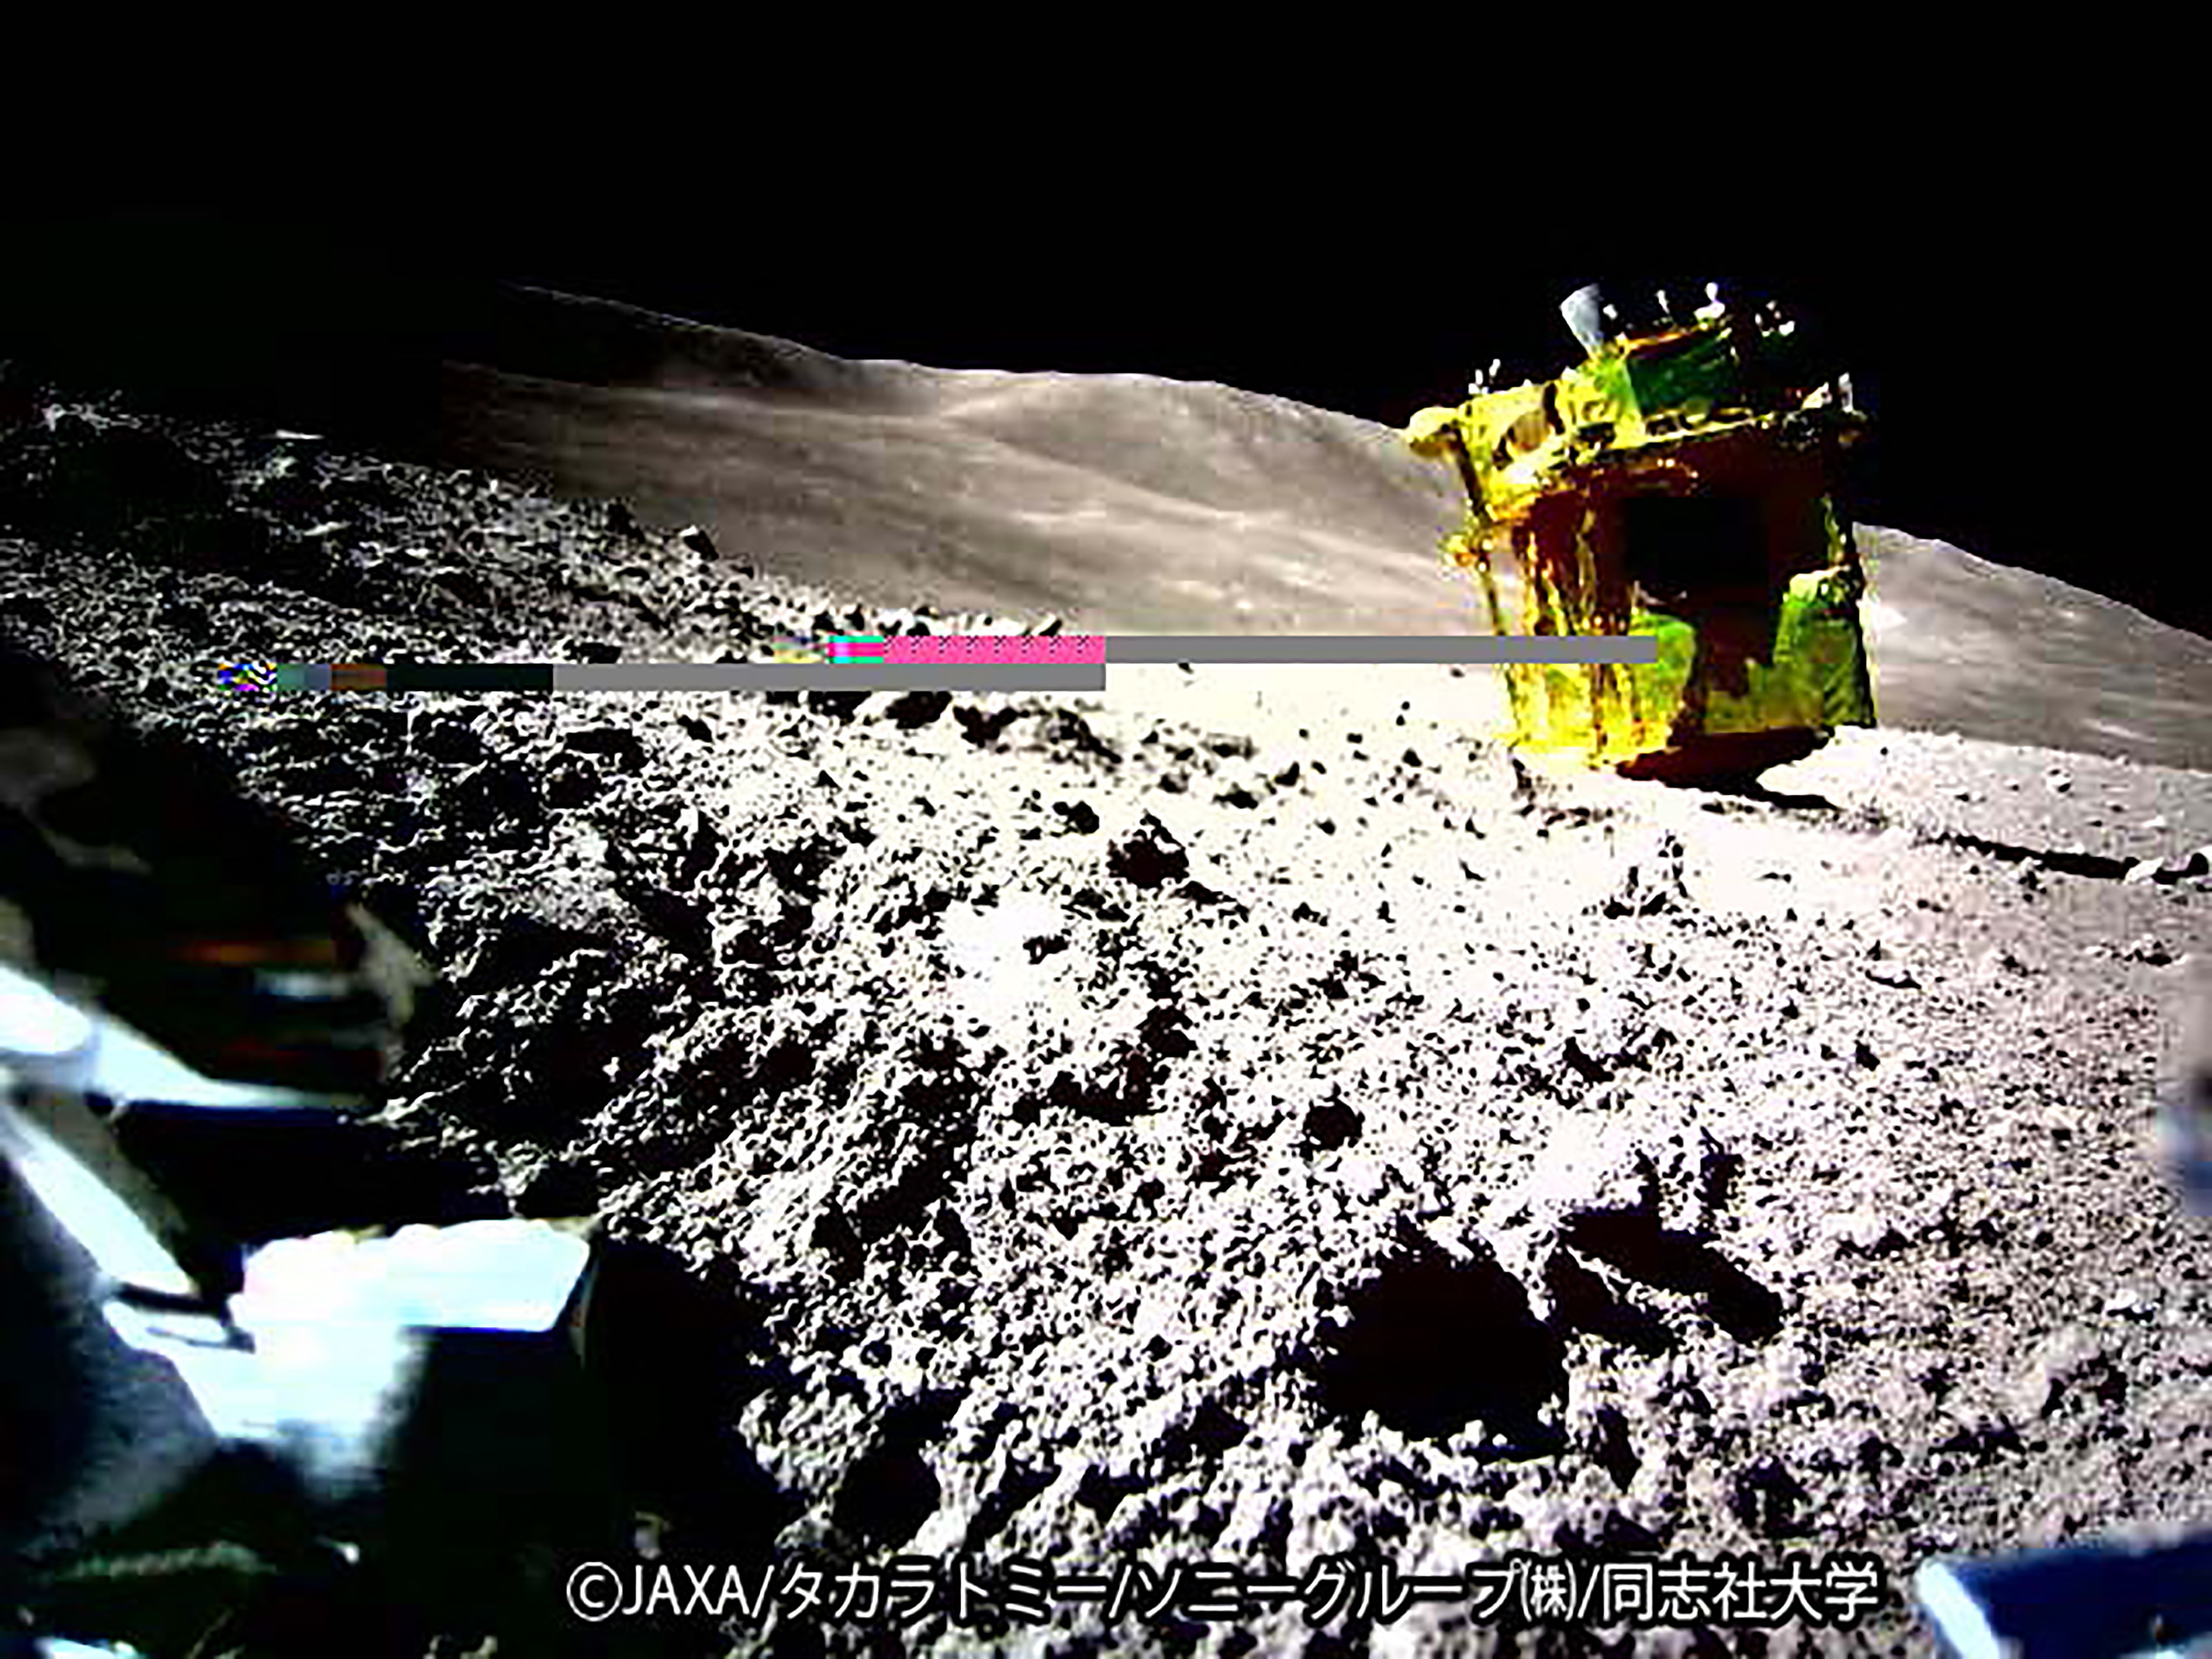 日本の宇宙探査機の月面着陸の最初の画像